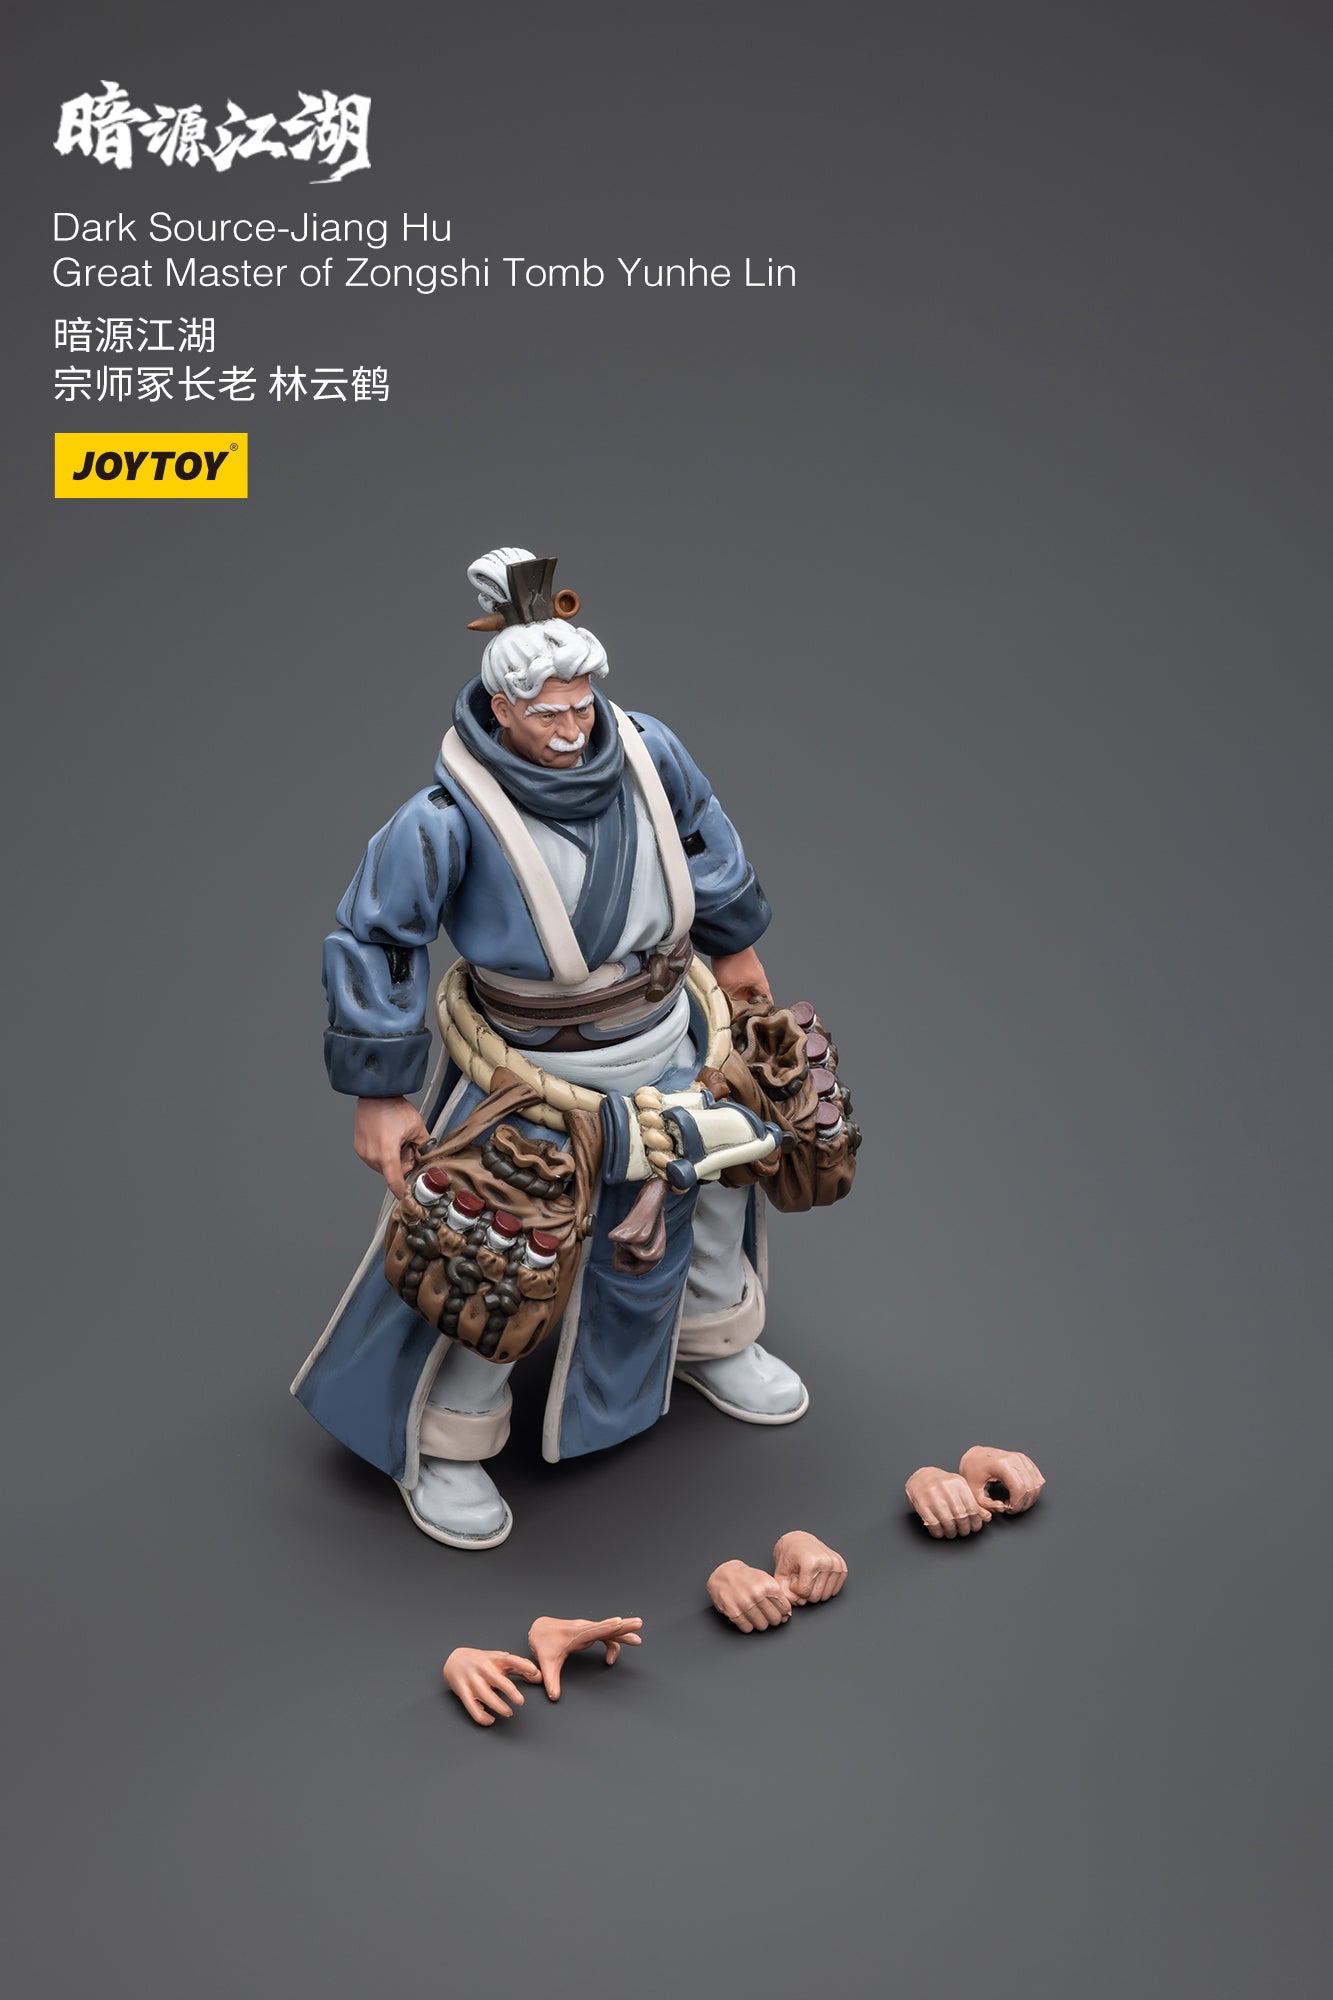 Dark Source-Jiang Hu Great Master of Zongshi Tomb Yunhe Lin - Action Figure By JOYTOY